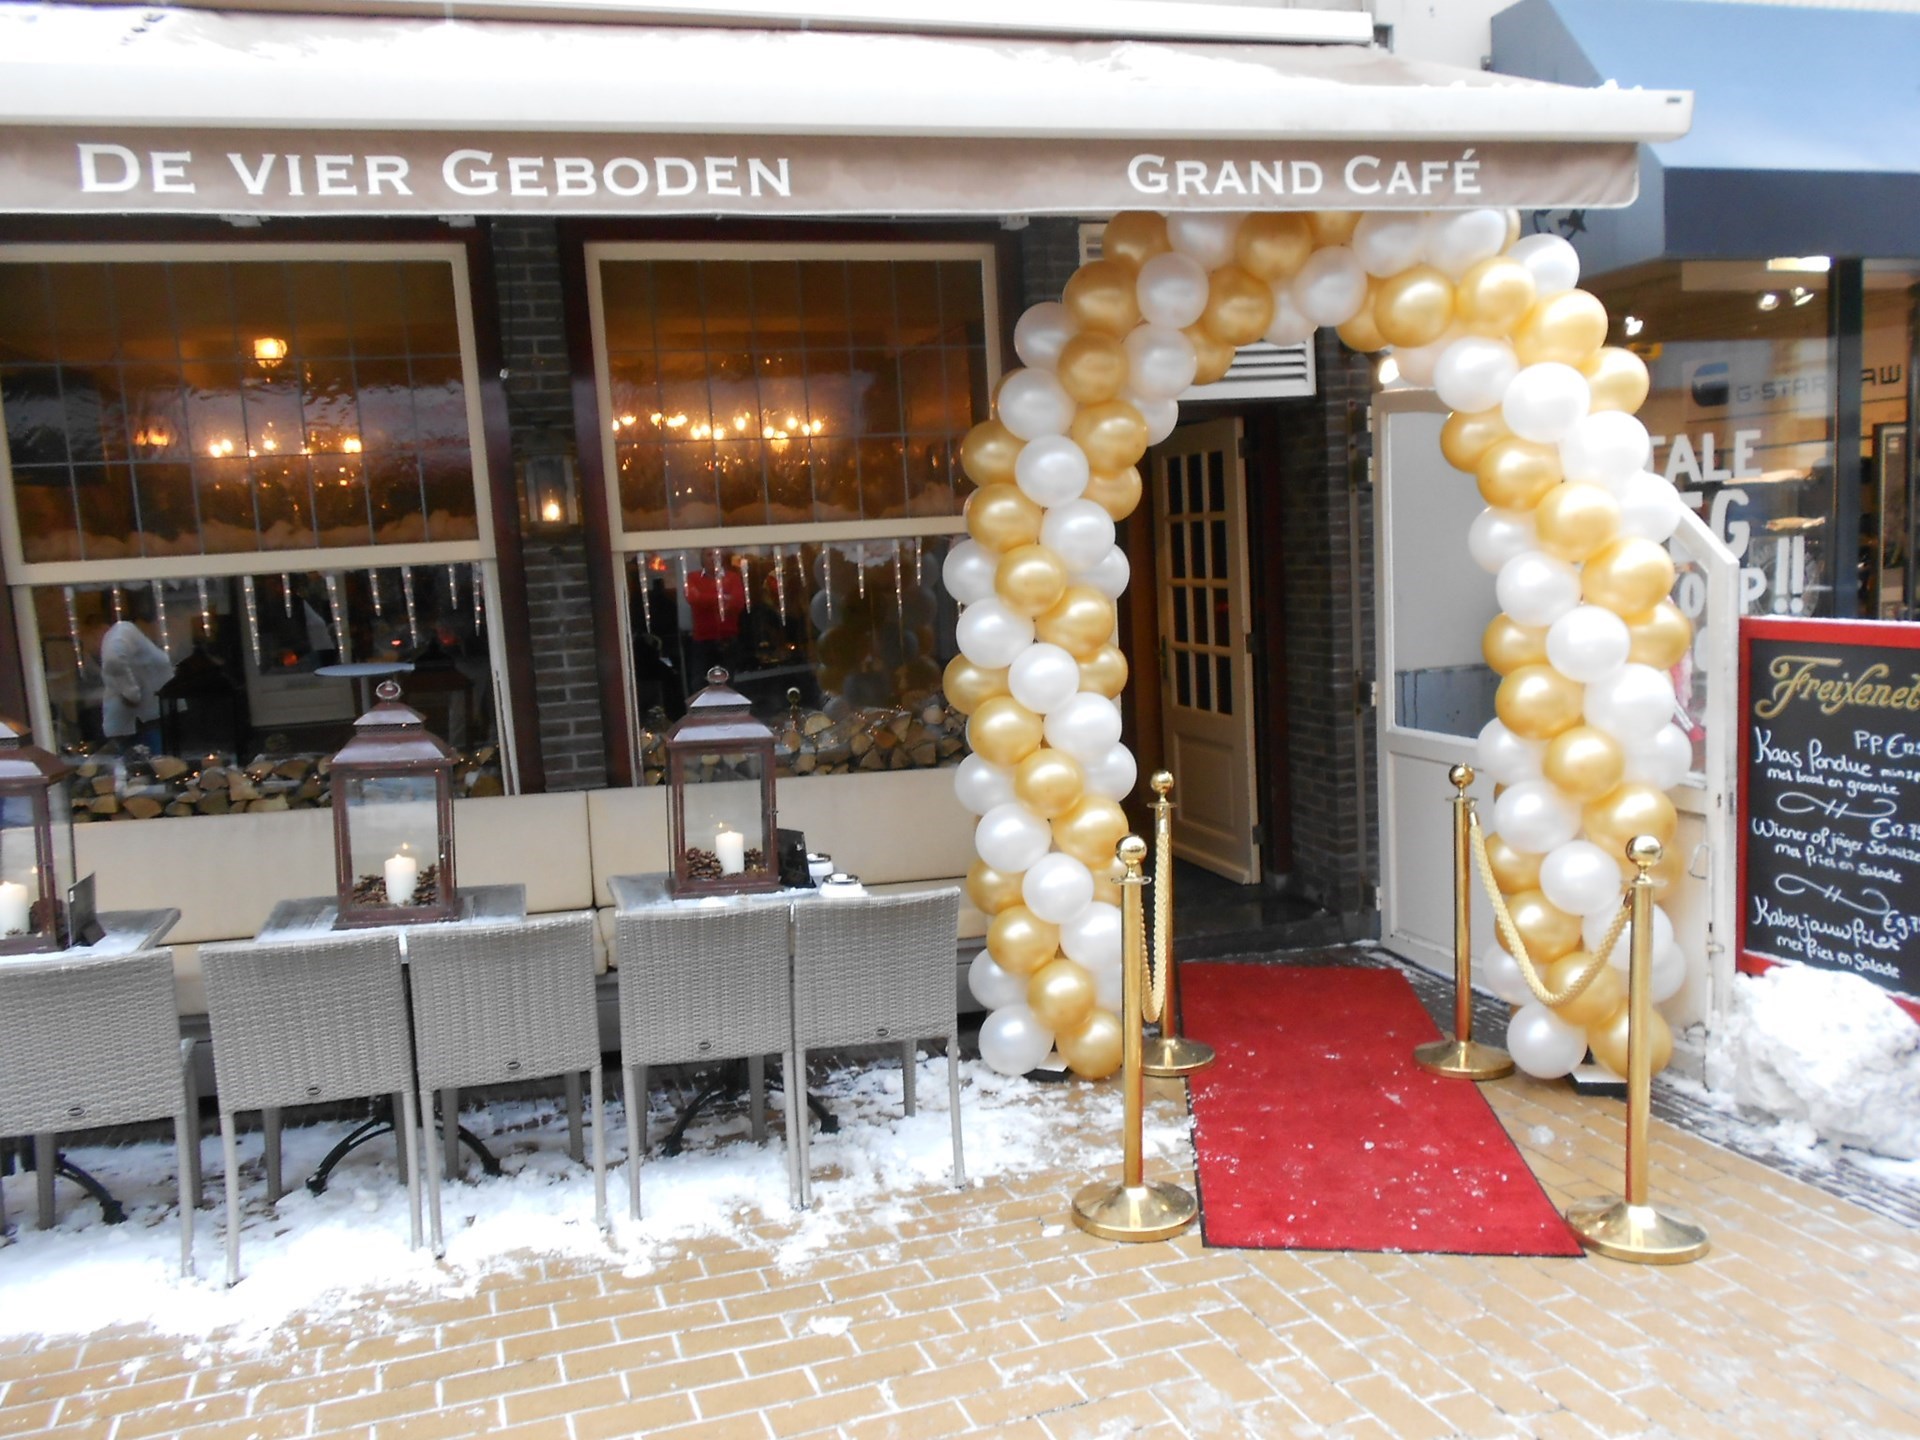 huwelijksfeest bij Grand Café De Vier Geboden Zandvoort met ballonnenboog bij entree